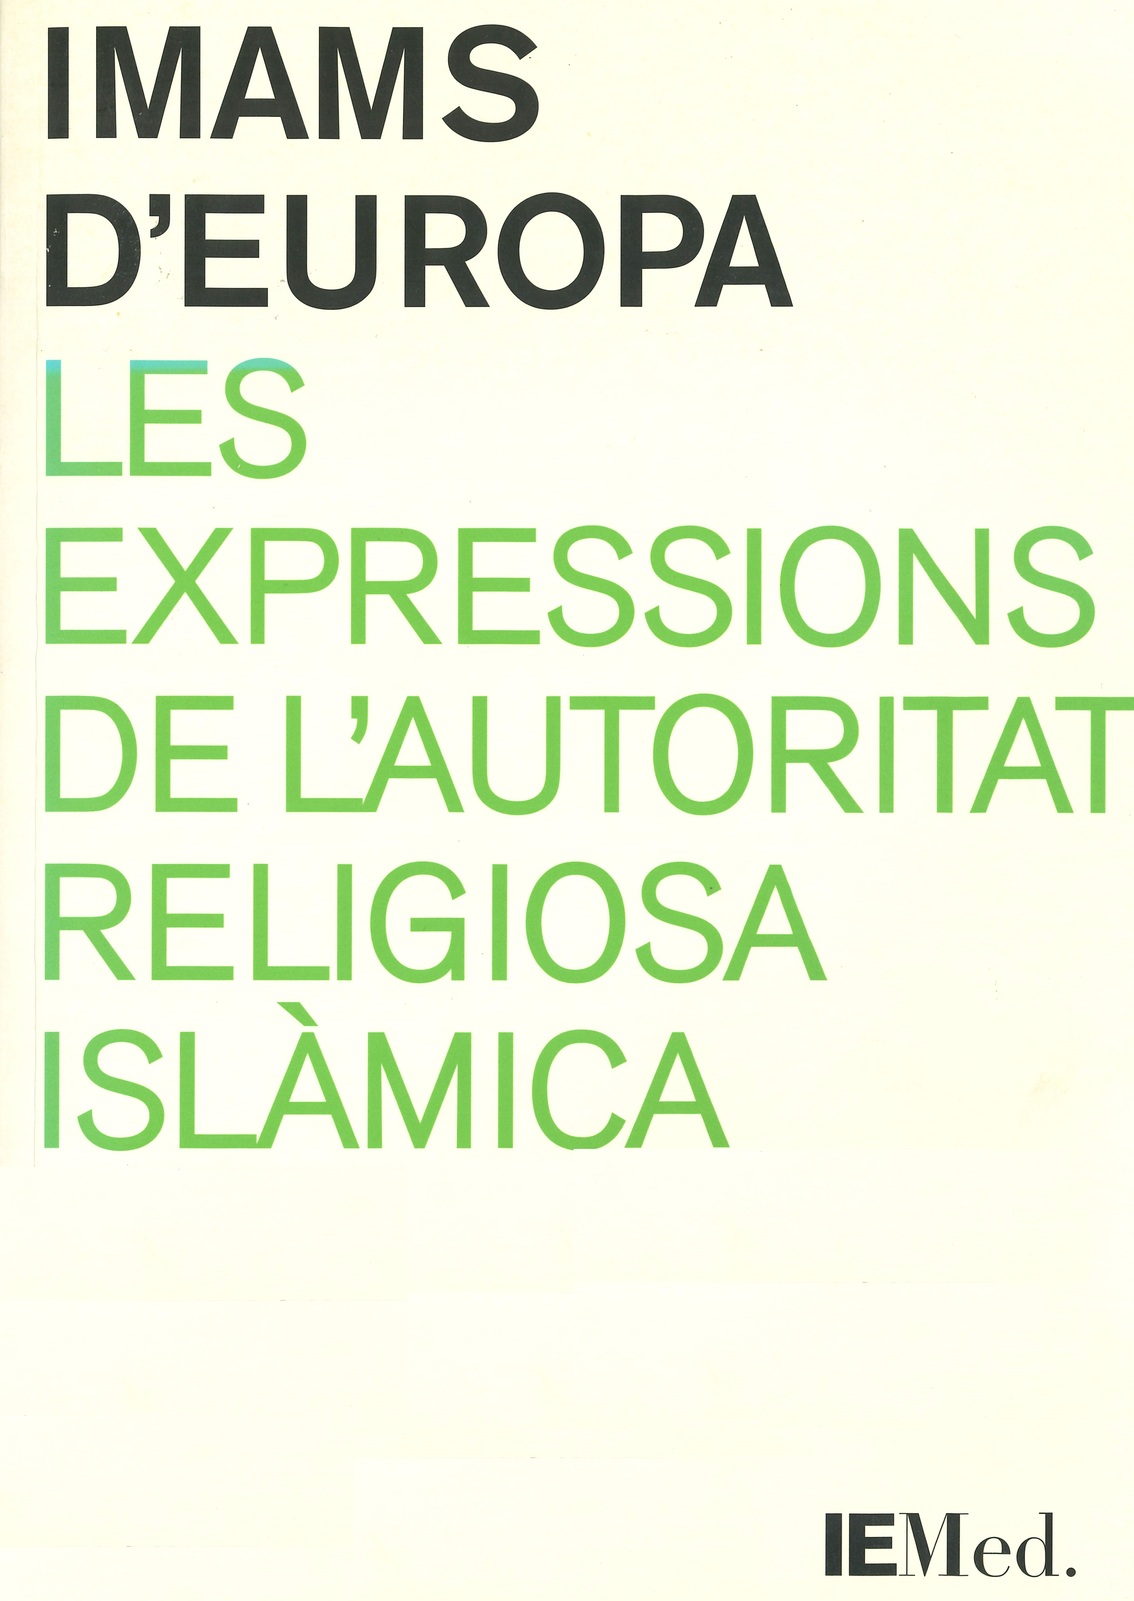 Imagen de portada del libro Imams d'Europa. Les expressions de l'autoritat religiosa islàmica